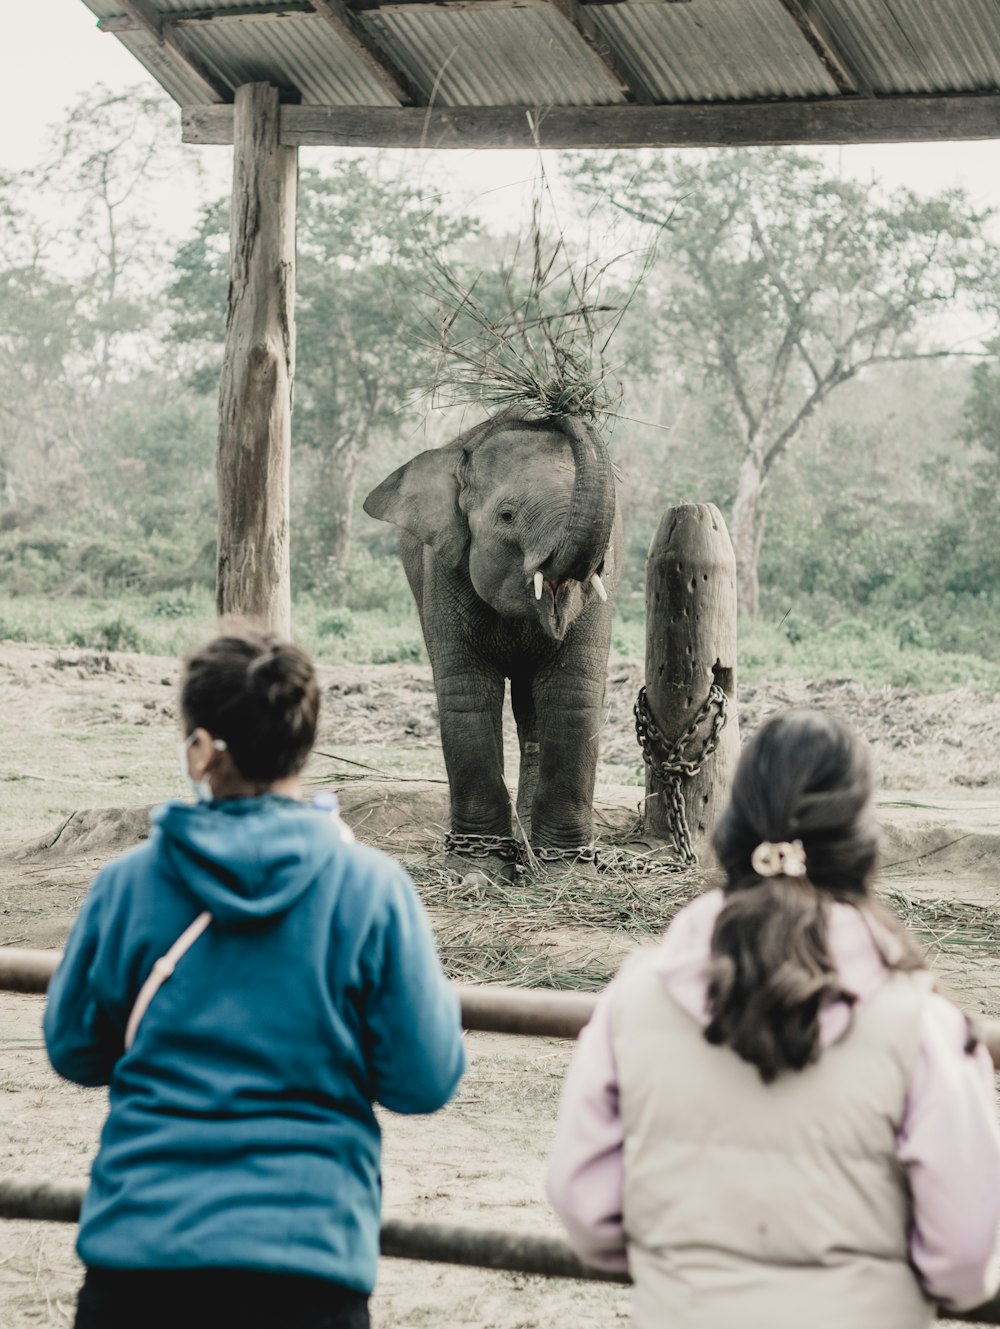 Eine Gruppe von Menschen beobachtet einen Elefanten durch einen Zaun